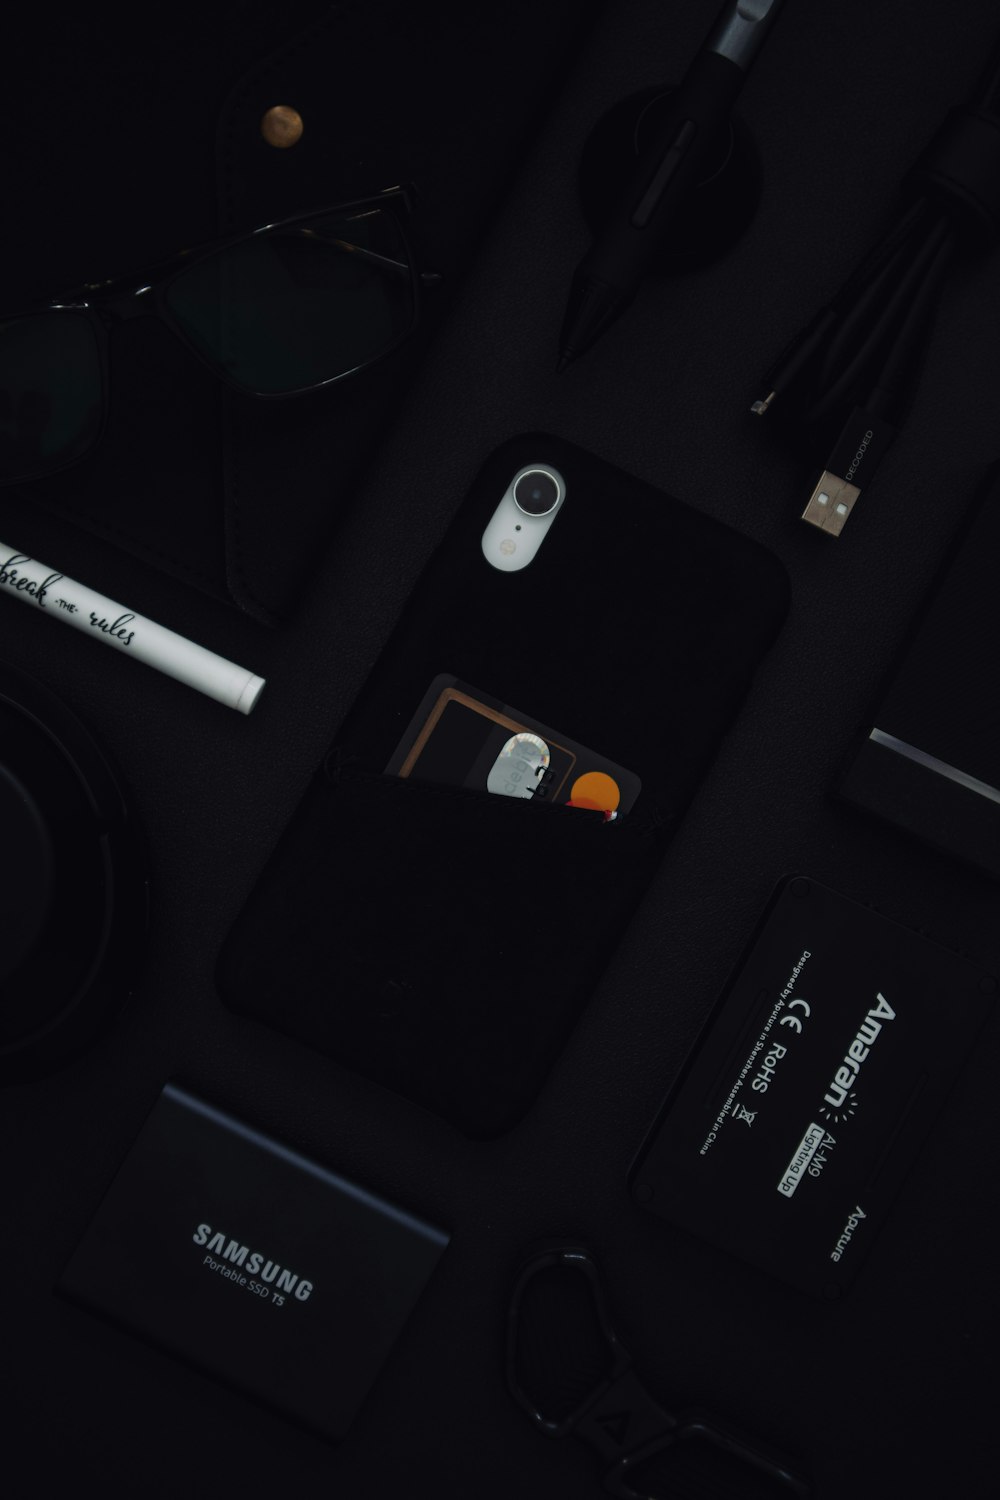 iPhone sur surface noire avec objectif de caméra blanc et noir